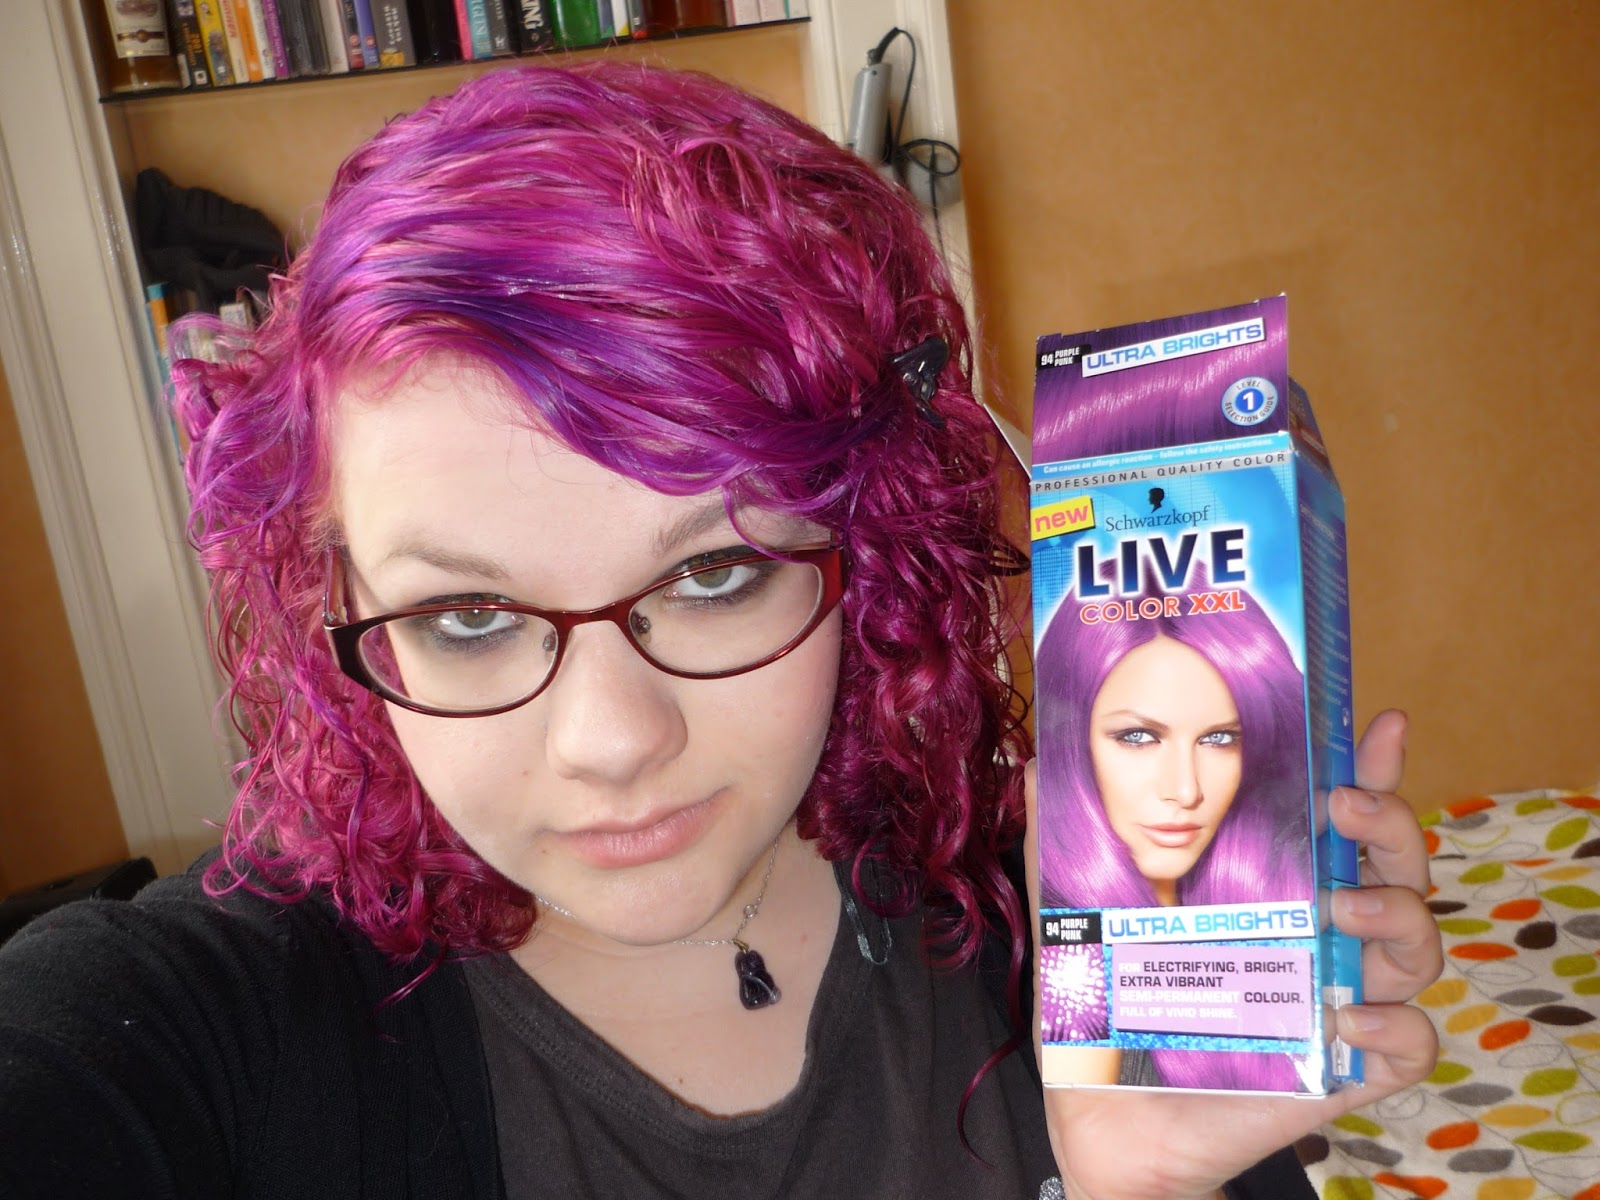 6. "Special Effects Semi-Permanent Hair Dye in Blue Mayhem" - wide 11